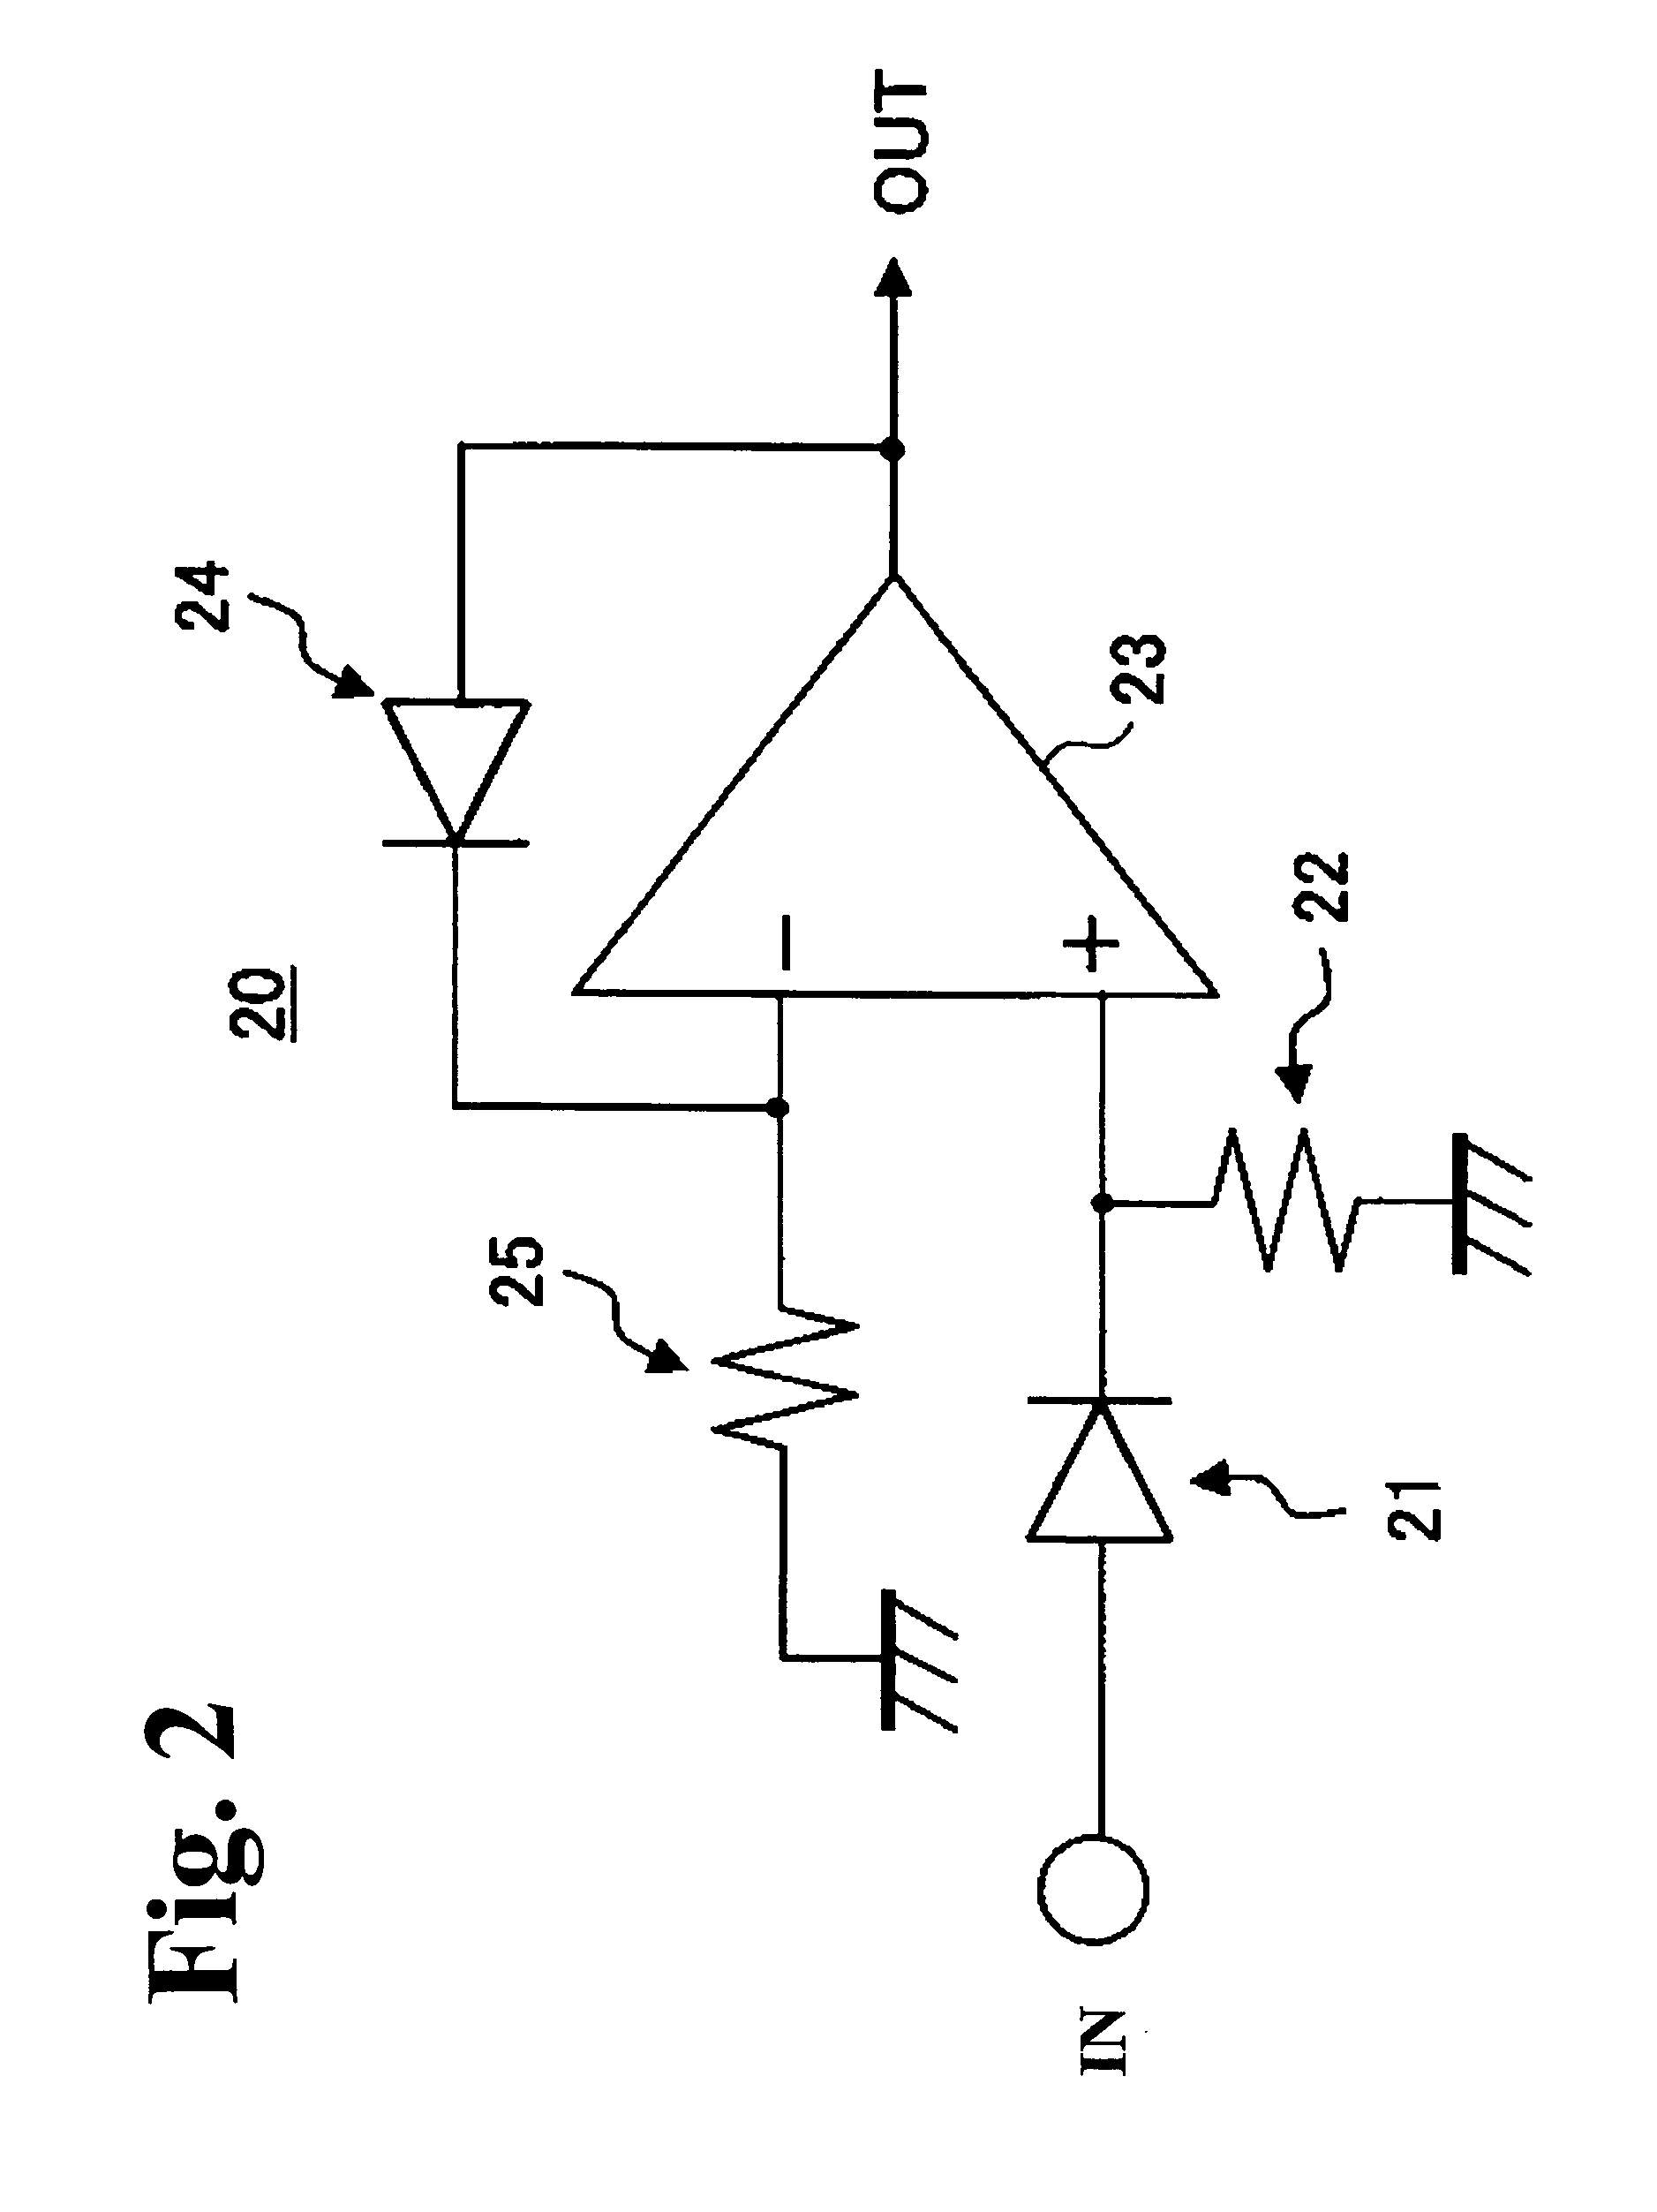 Diode detecting circuit